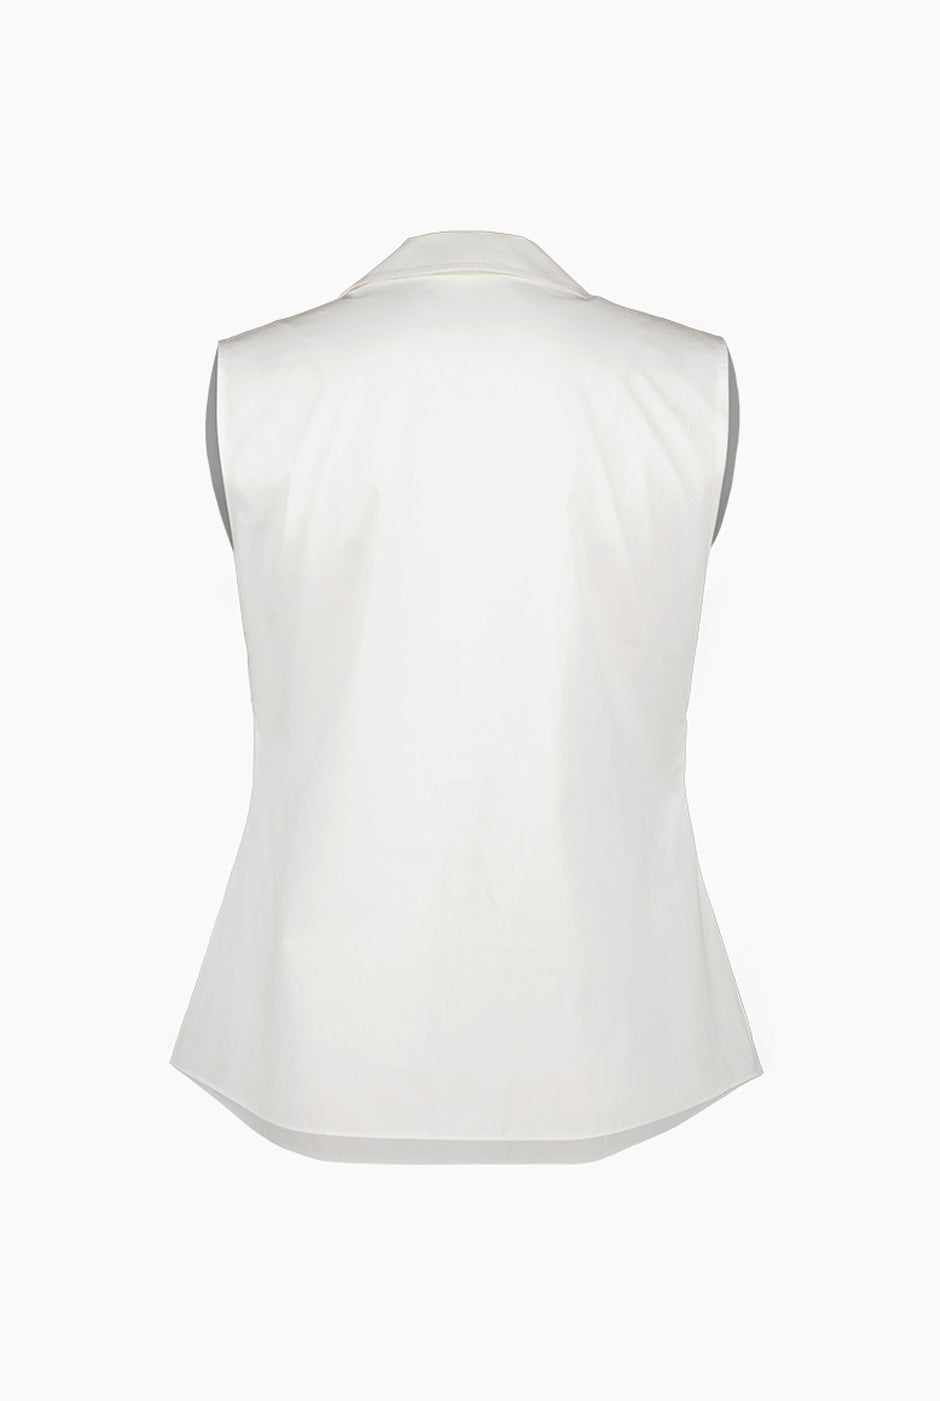 Blusa camisera color blanca con cuello y bolsillo frontal